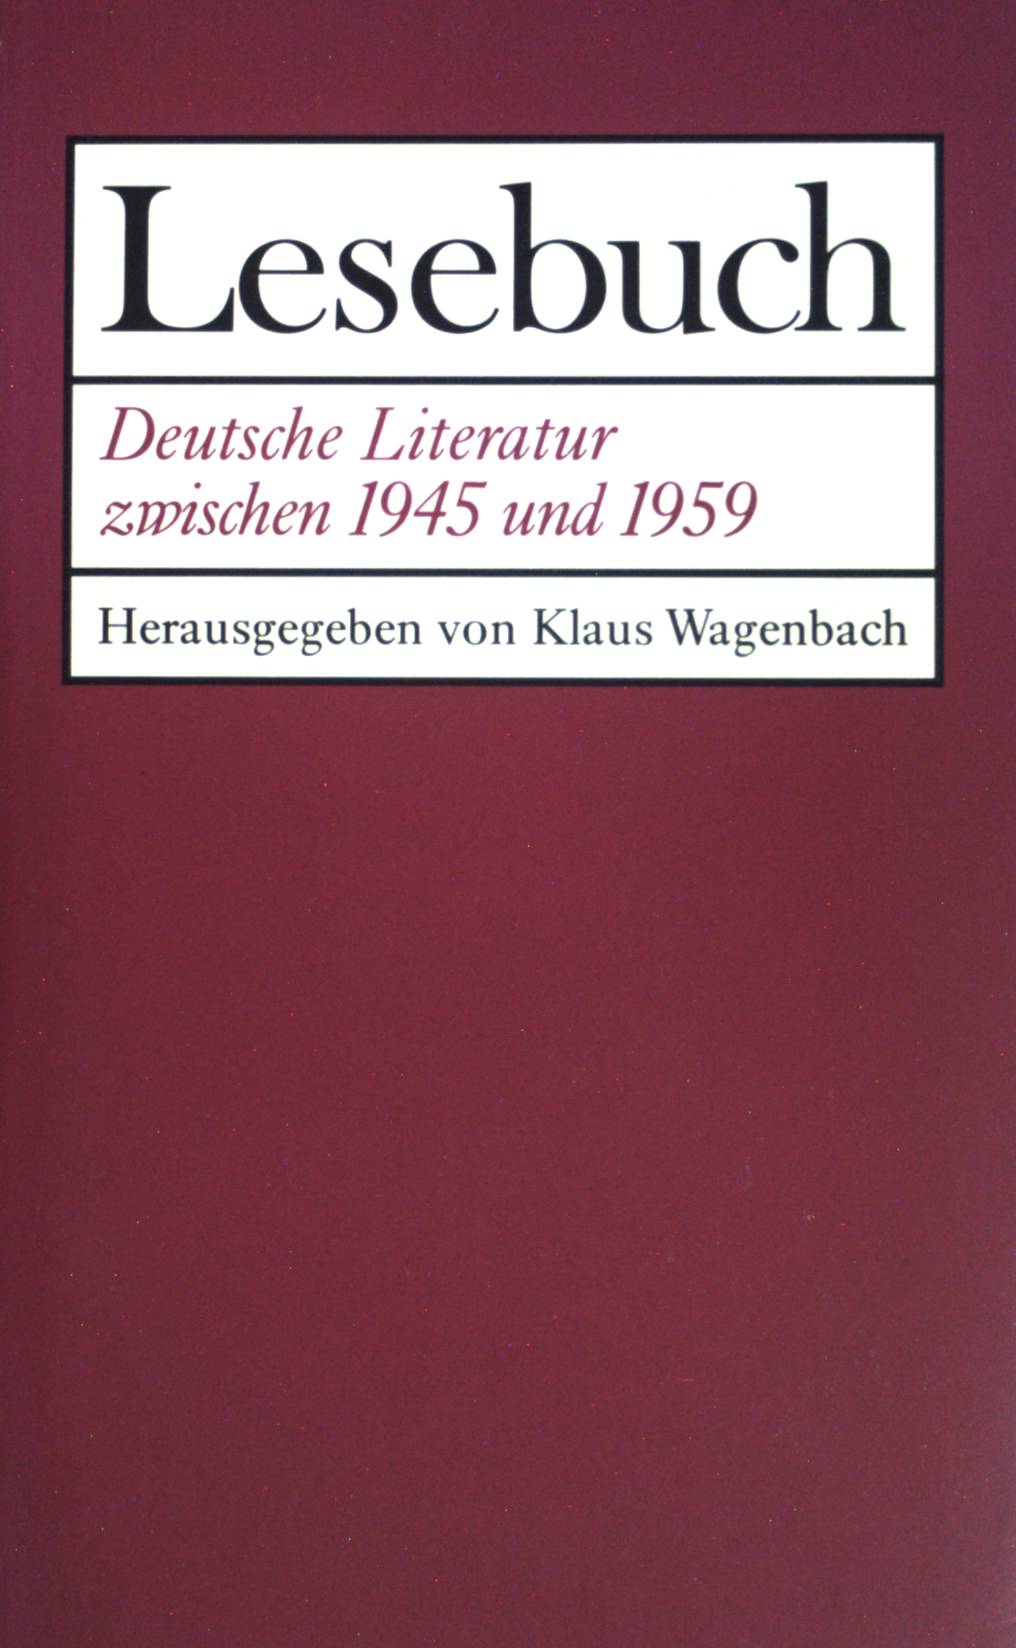 Lesebuch Deutsche Literatur zwischen 1945 und 1959 : Lesebuch für die Oberstufe. - Wagenbach, Klaus [Hrsg.]